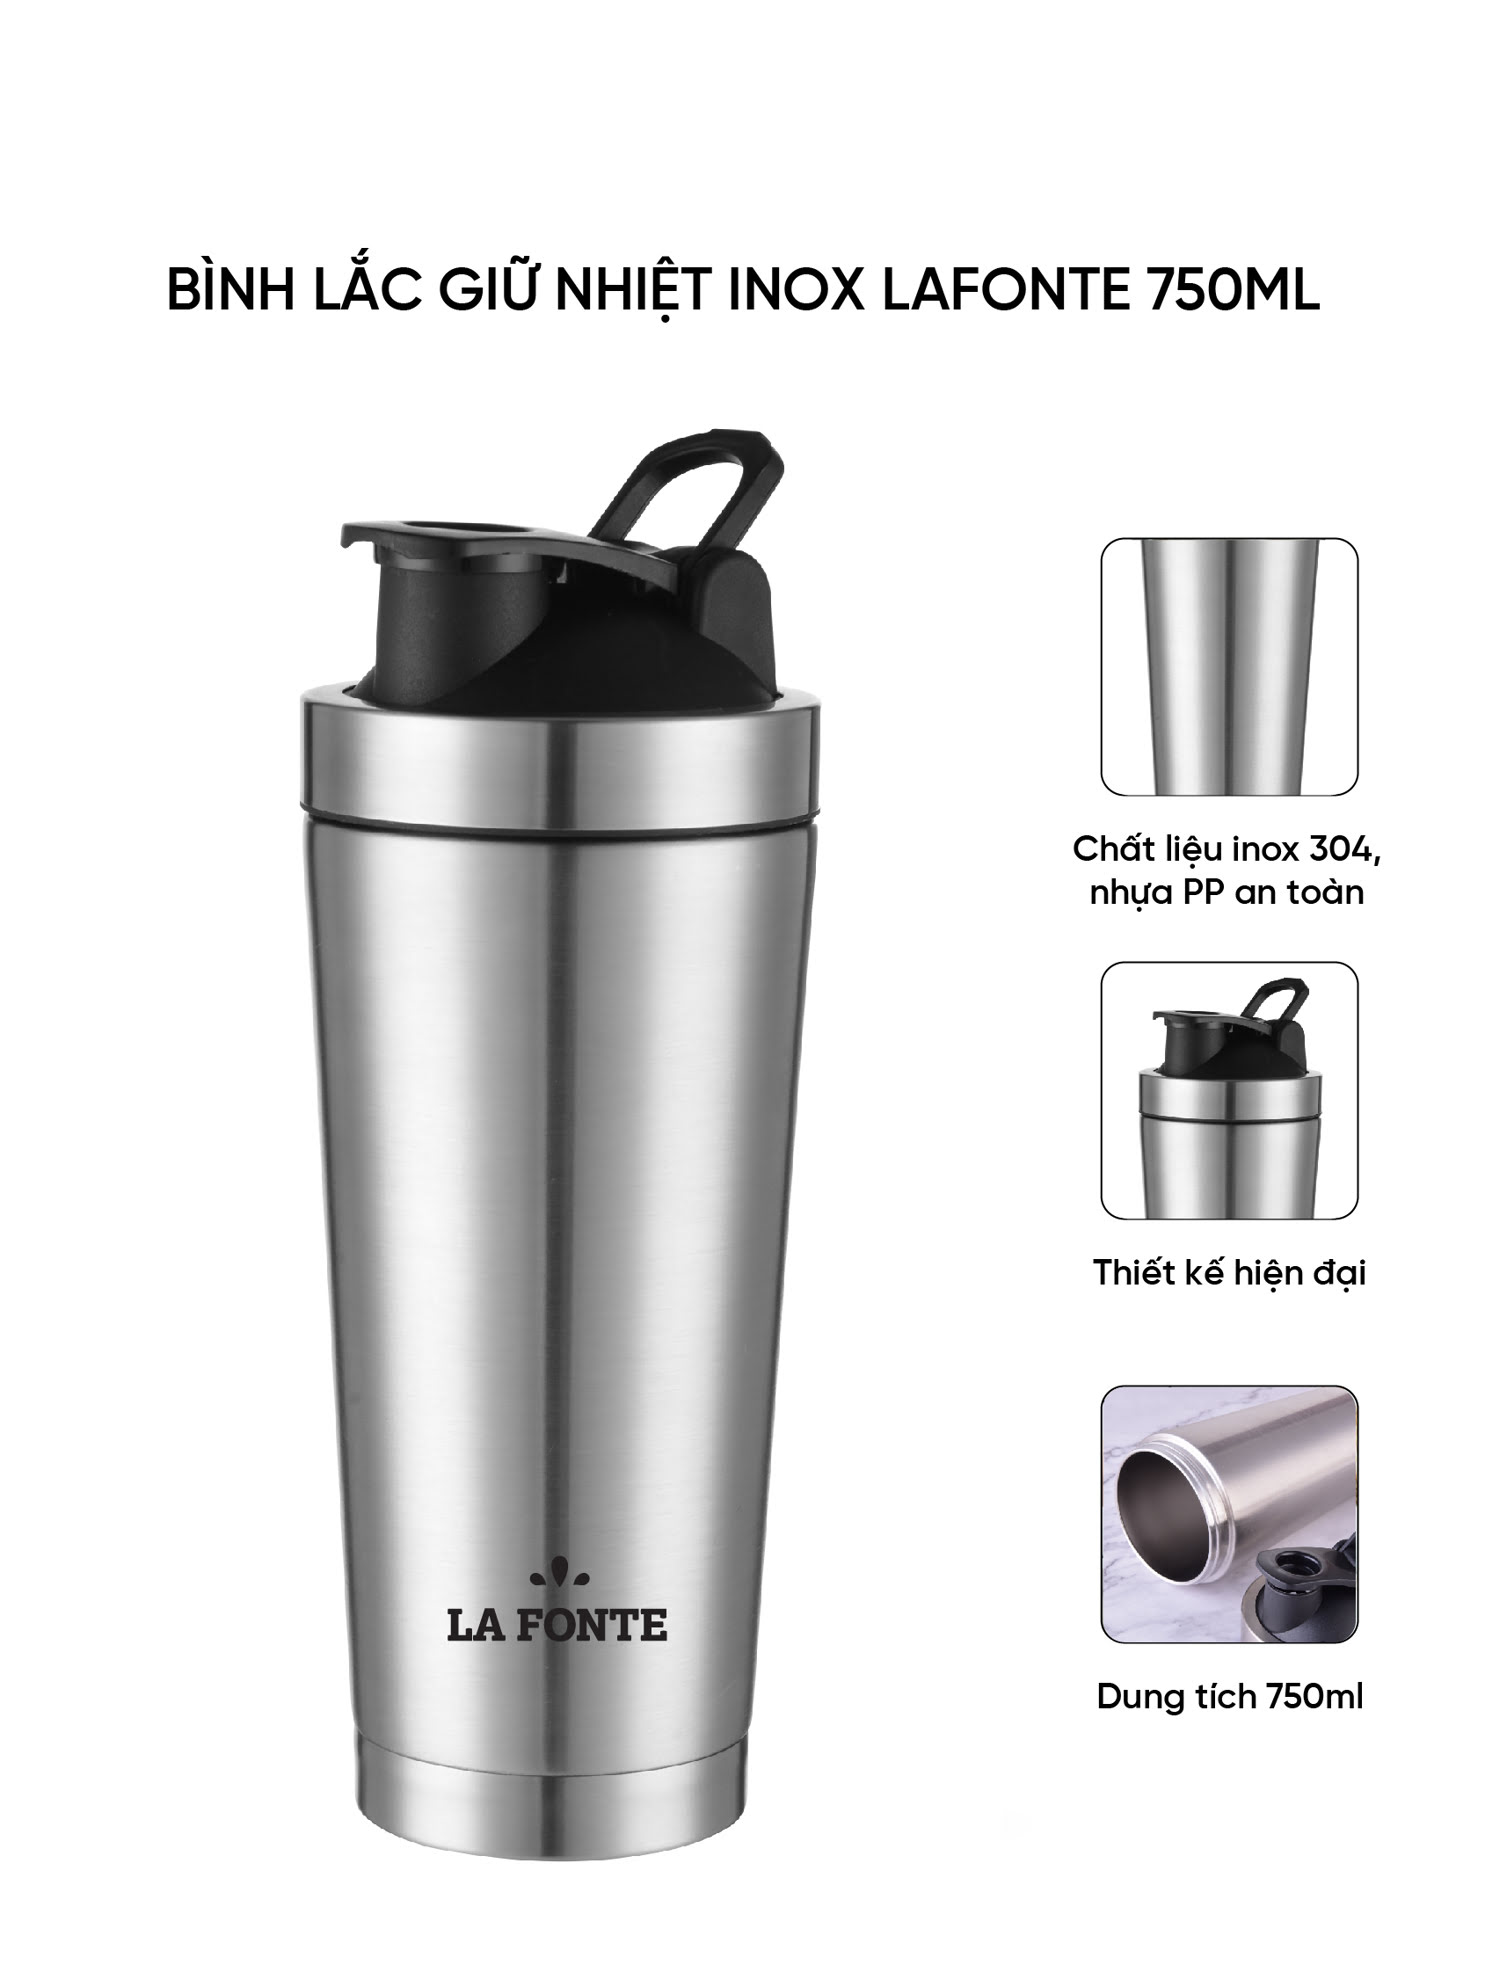 Bình lắc giữ nhiệt shaker inox 750ml La Fonte - 001755 